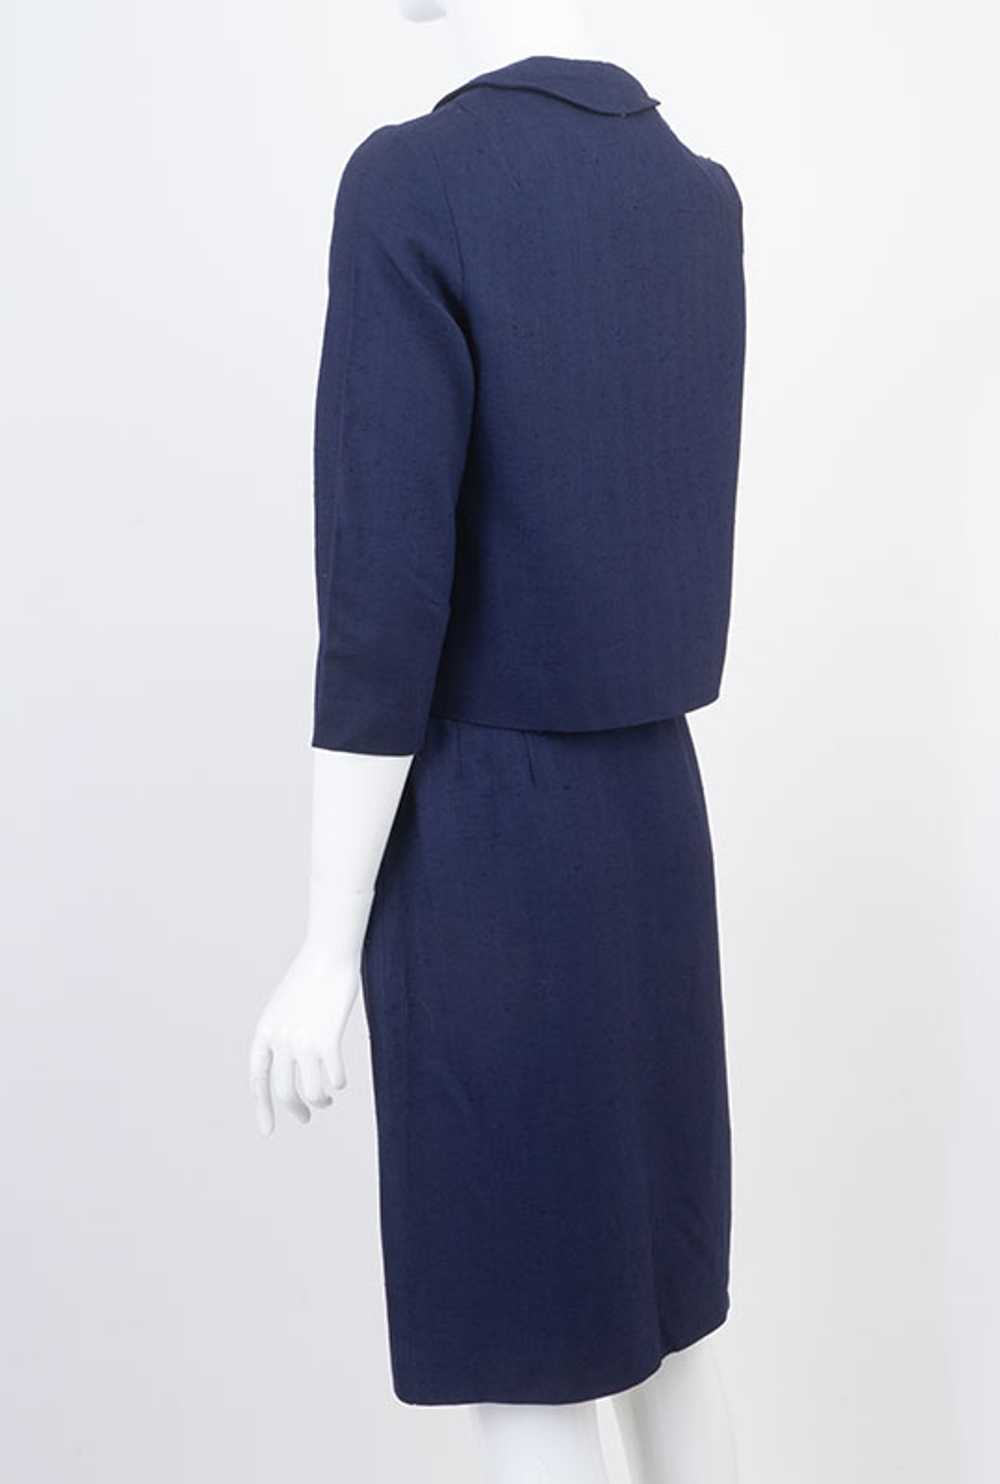 1960s Vintage Linen 2 Piece Dress - image 5